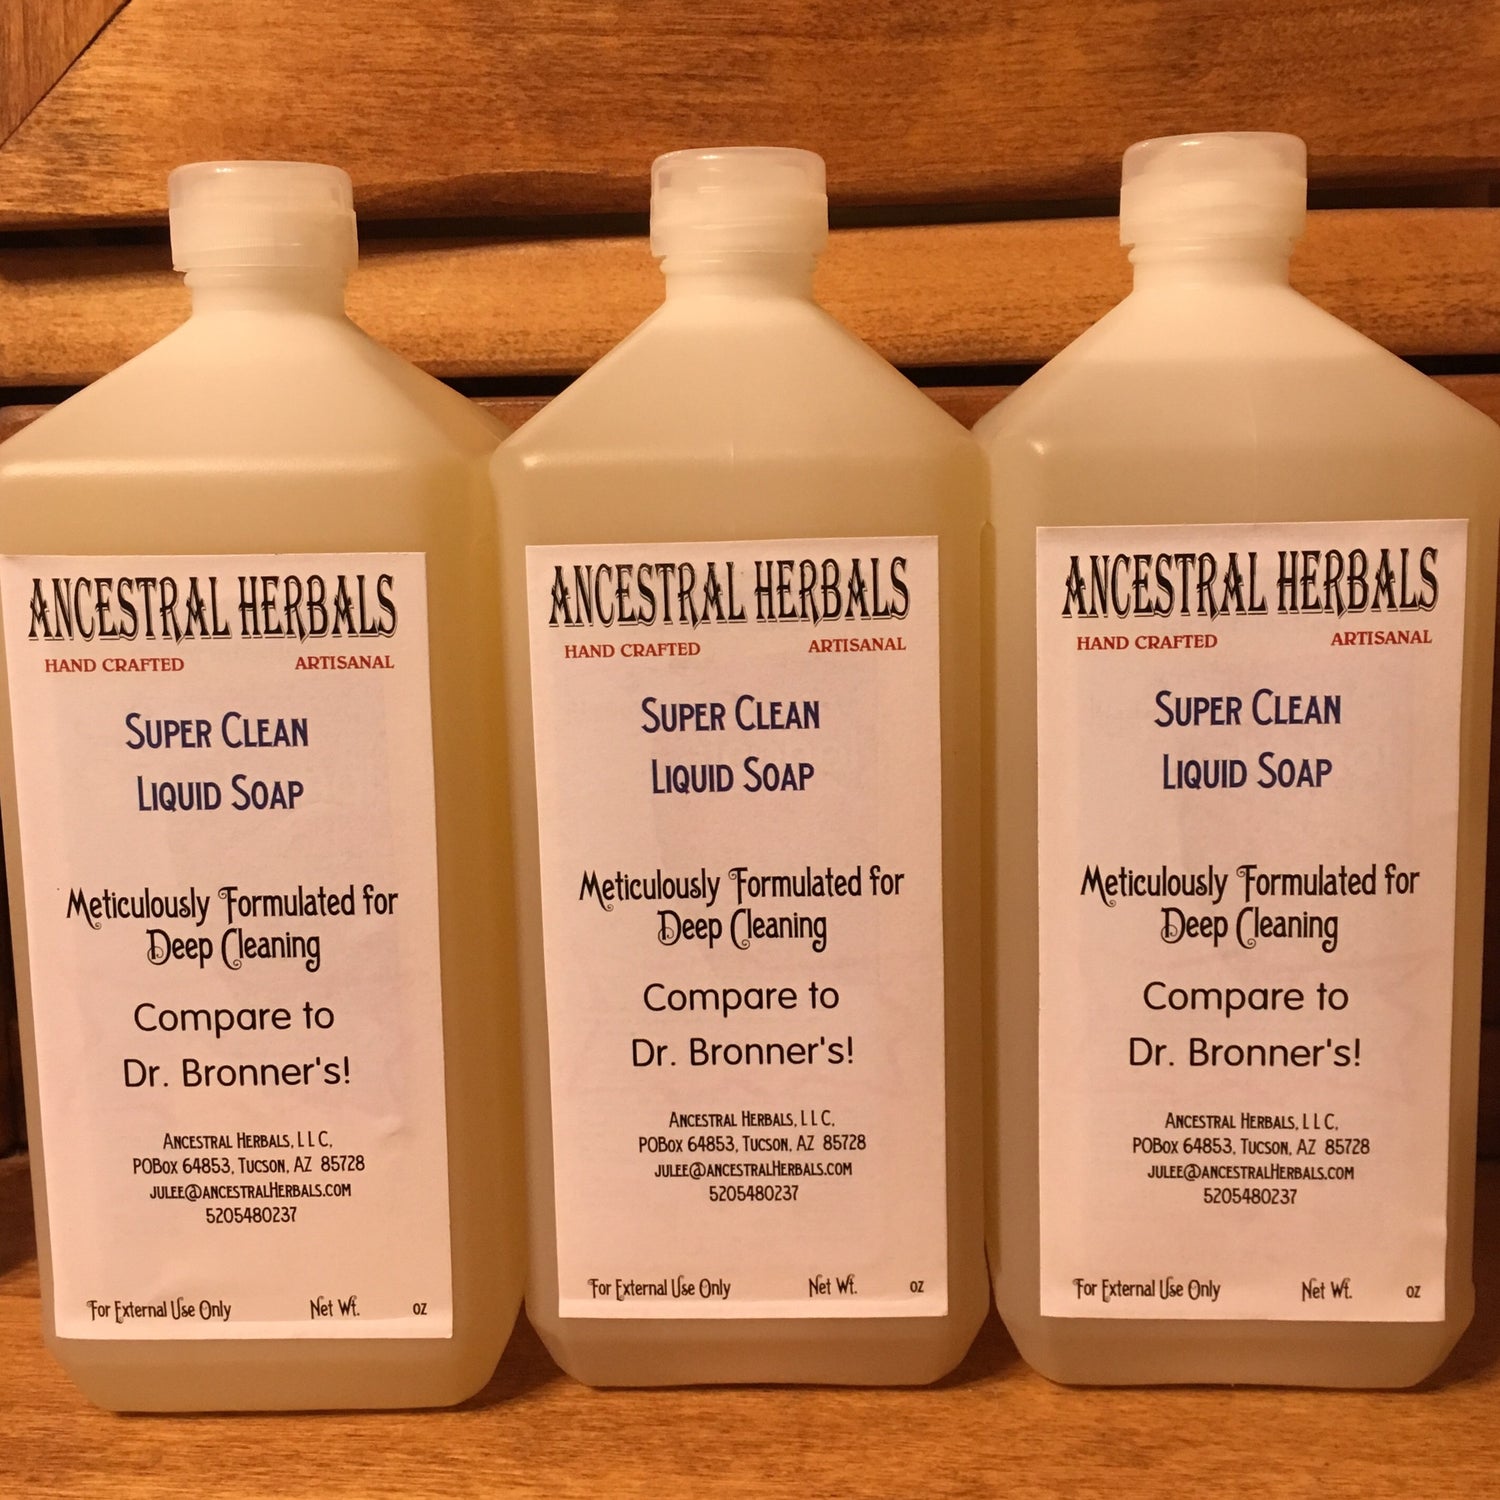 Super Clean Liquid Soap